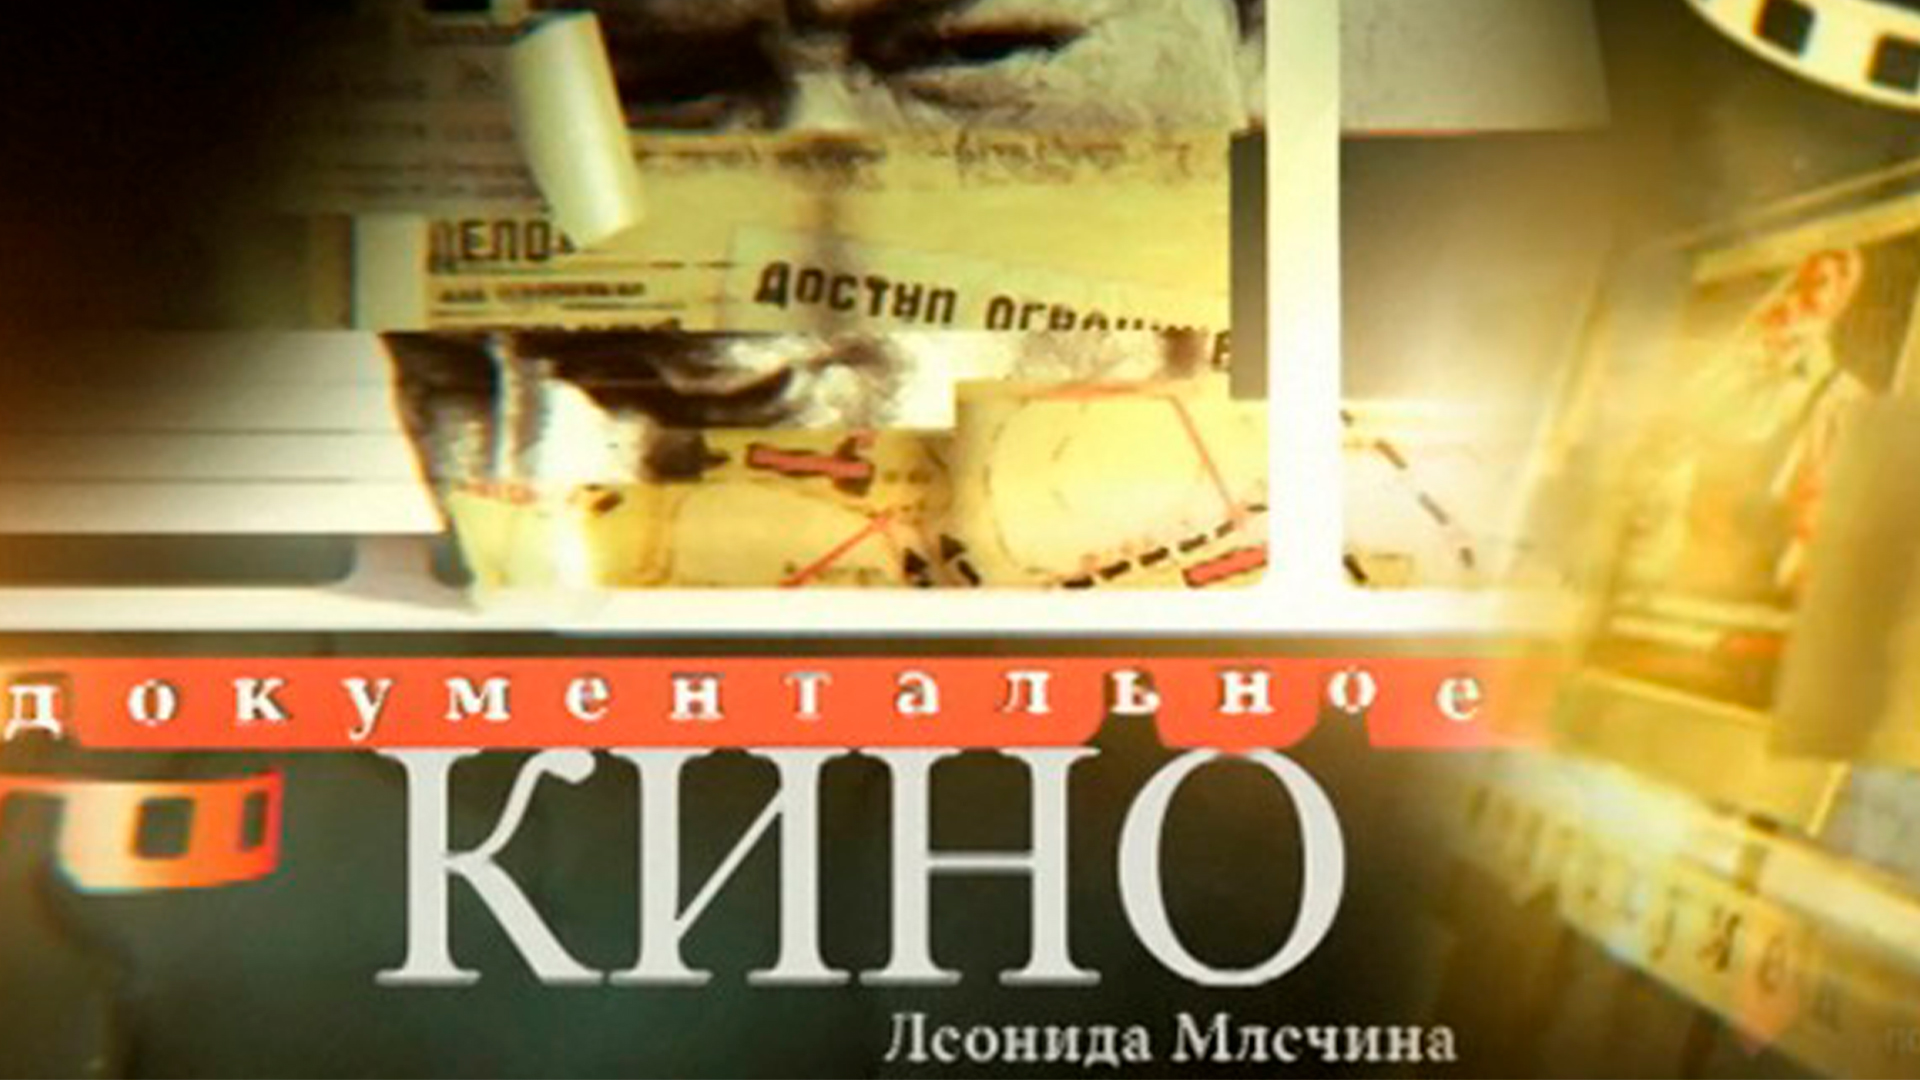 Документальное кино Леонида Млечина